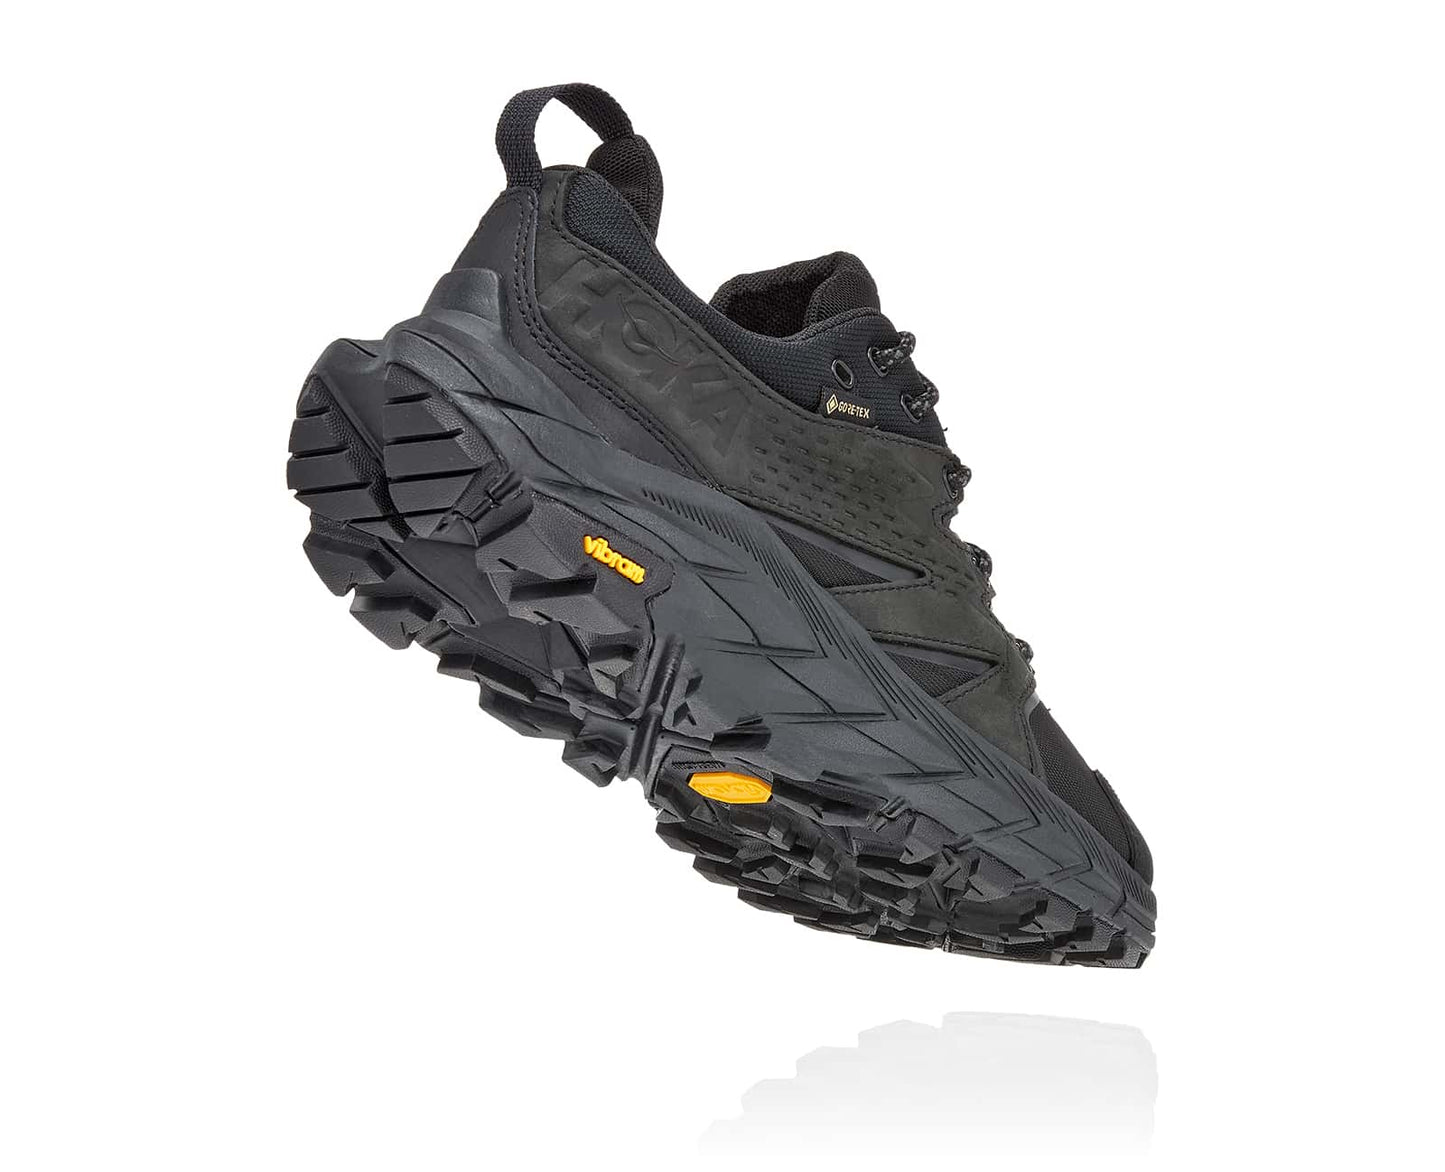 Anacapa M GTX low, svart vattentät sko perfekt för vandring i alla underlag och väder. Hos Hoka specialisterna i Sverige.